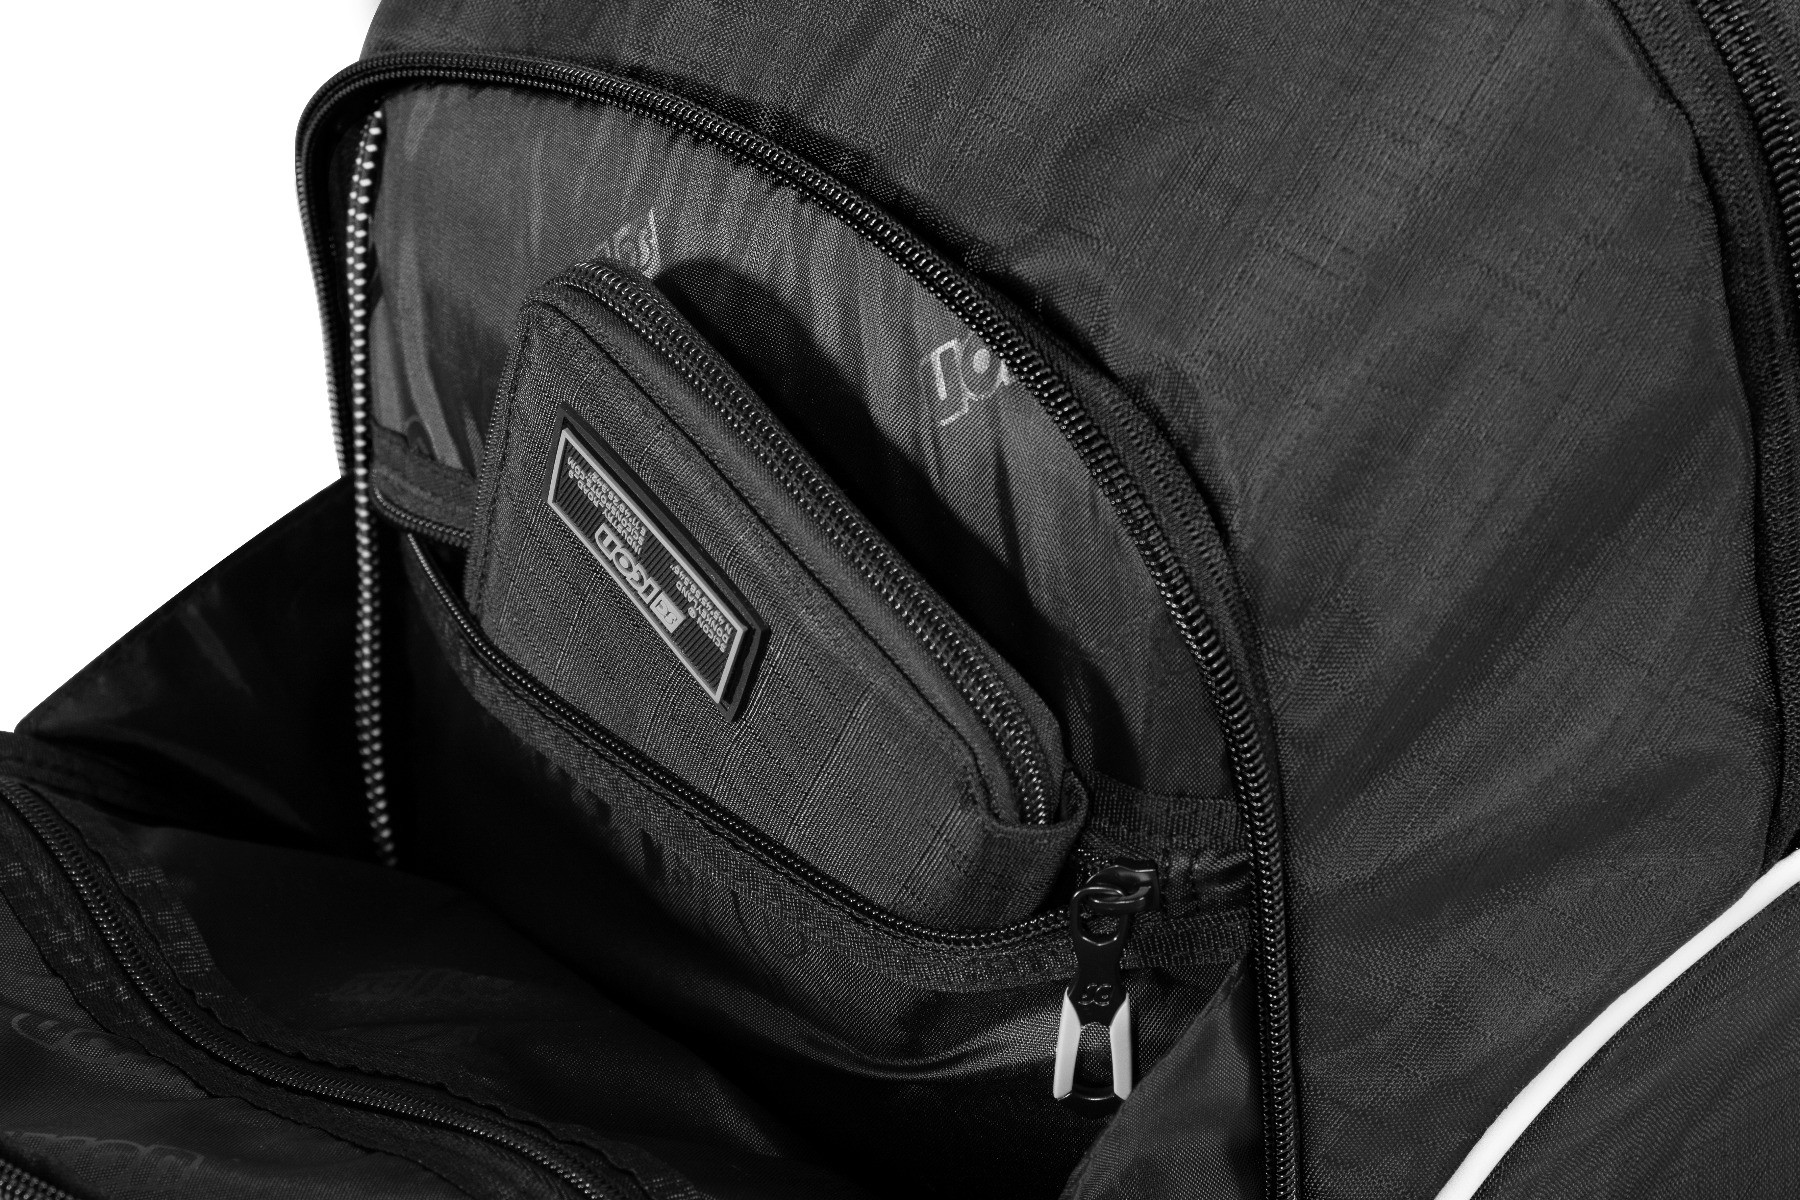 Sport Backpack 25L